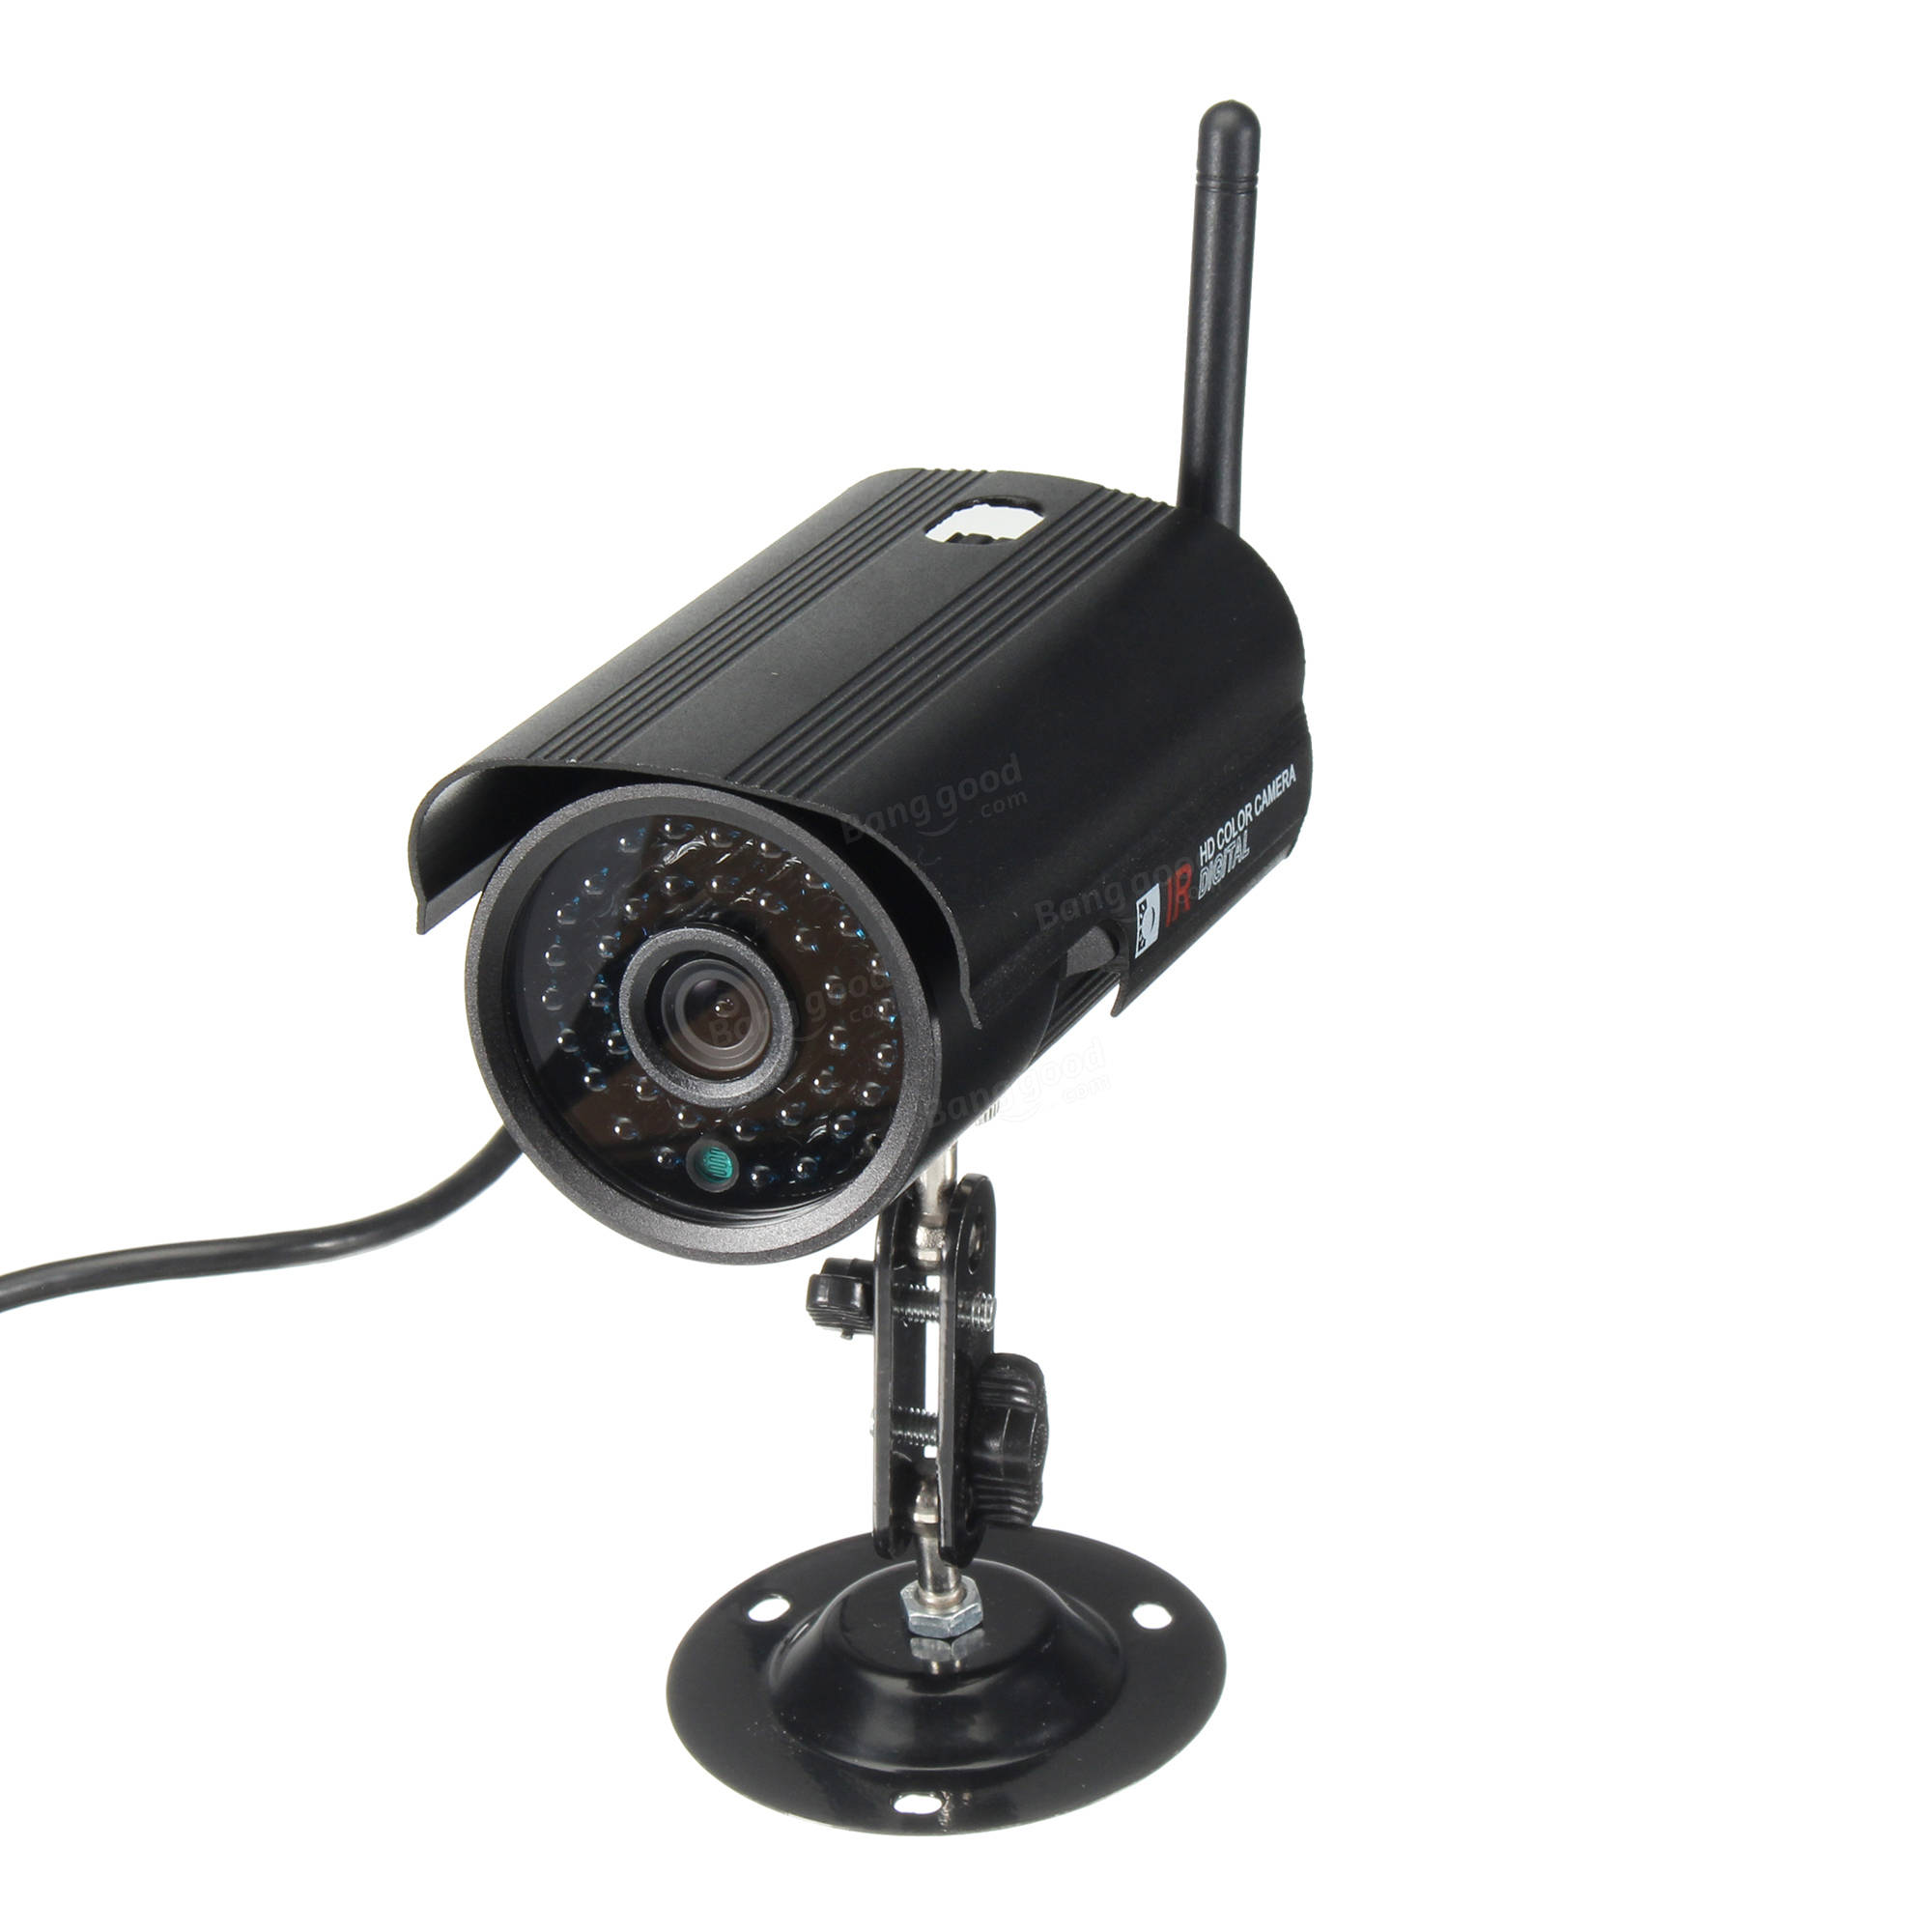 Купить беспроводную камеру наблюдения. "FS-t220" камера видеонаблюдения. S6205y-WR камера видеонаблюдения. RNR камера видеонаблюдения HD 720p. WIFI видеокамера для наблюдения qrrsult 111 18837577.